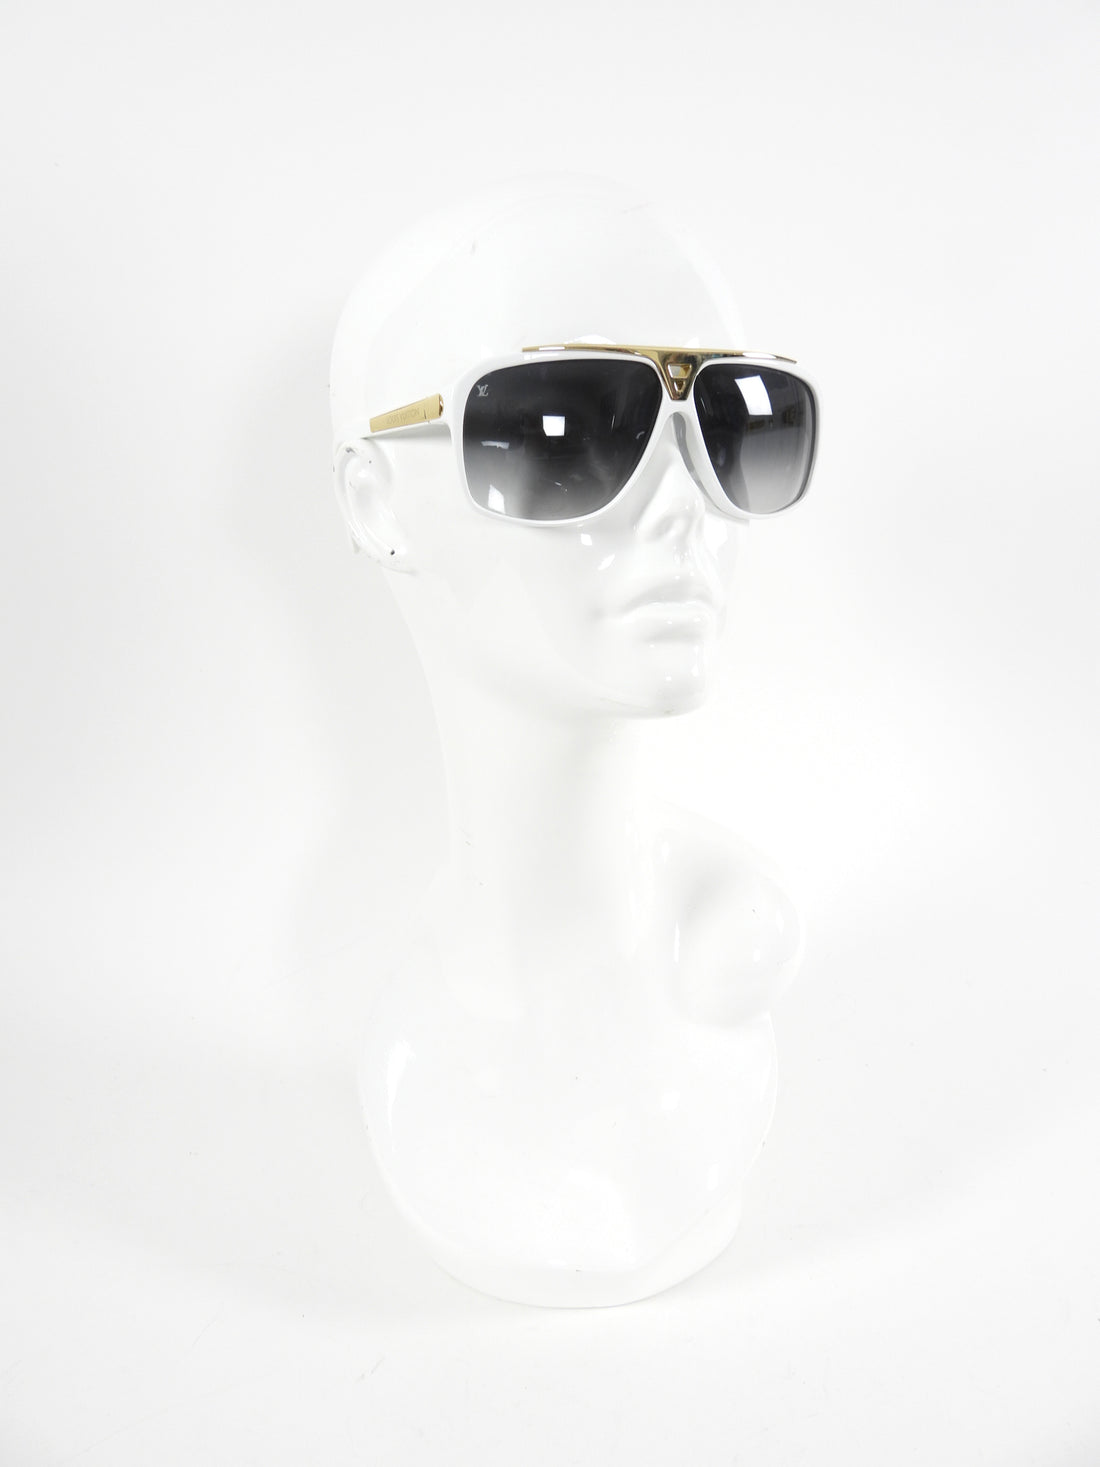 Louis Vuitton Millionaire Sunglasses White FOR SALE! - PicClick